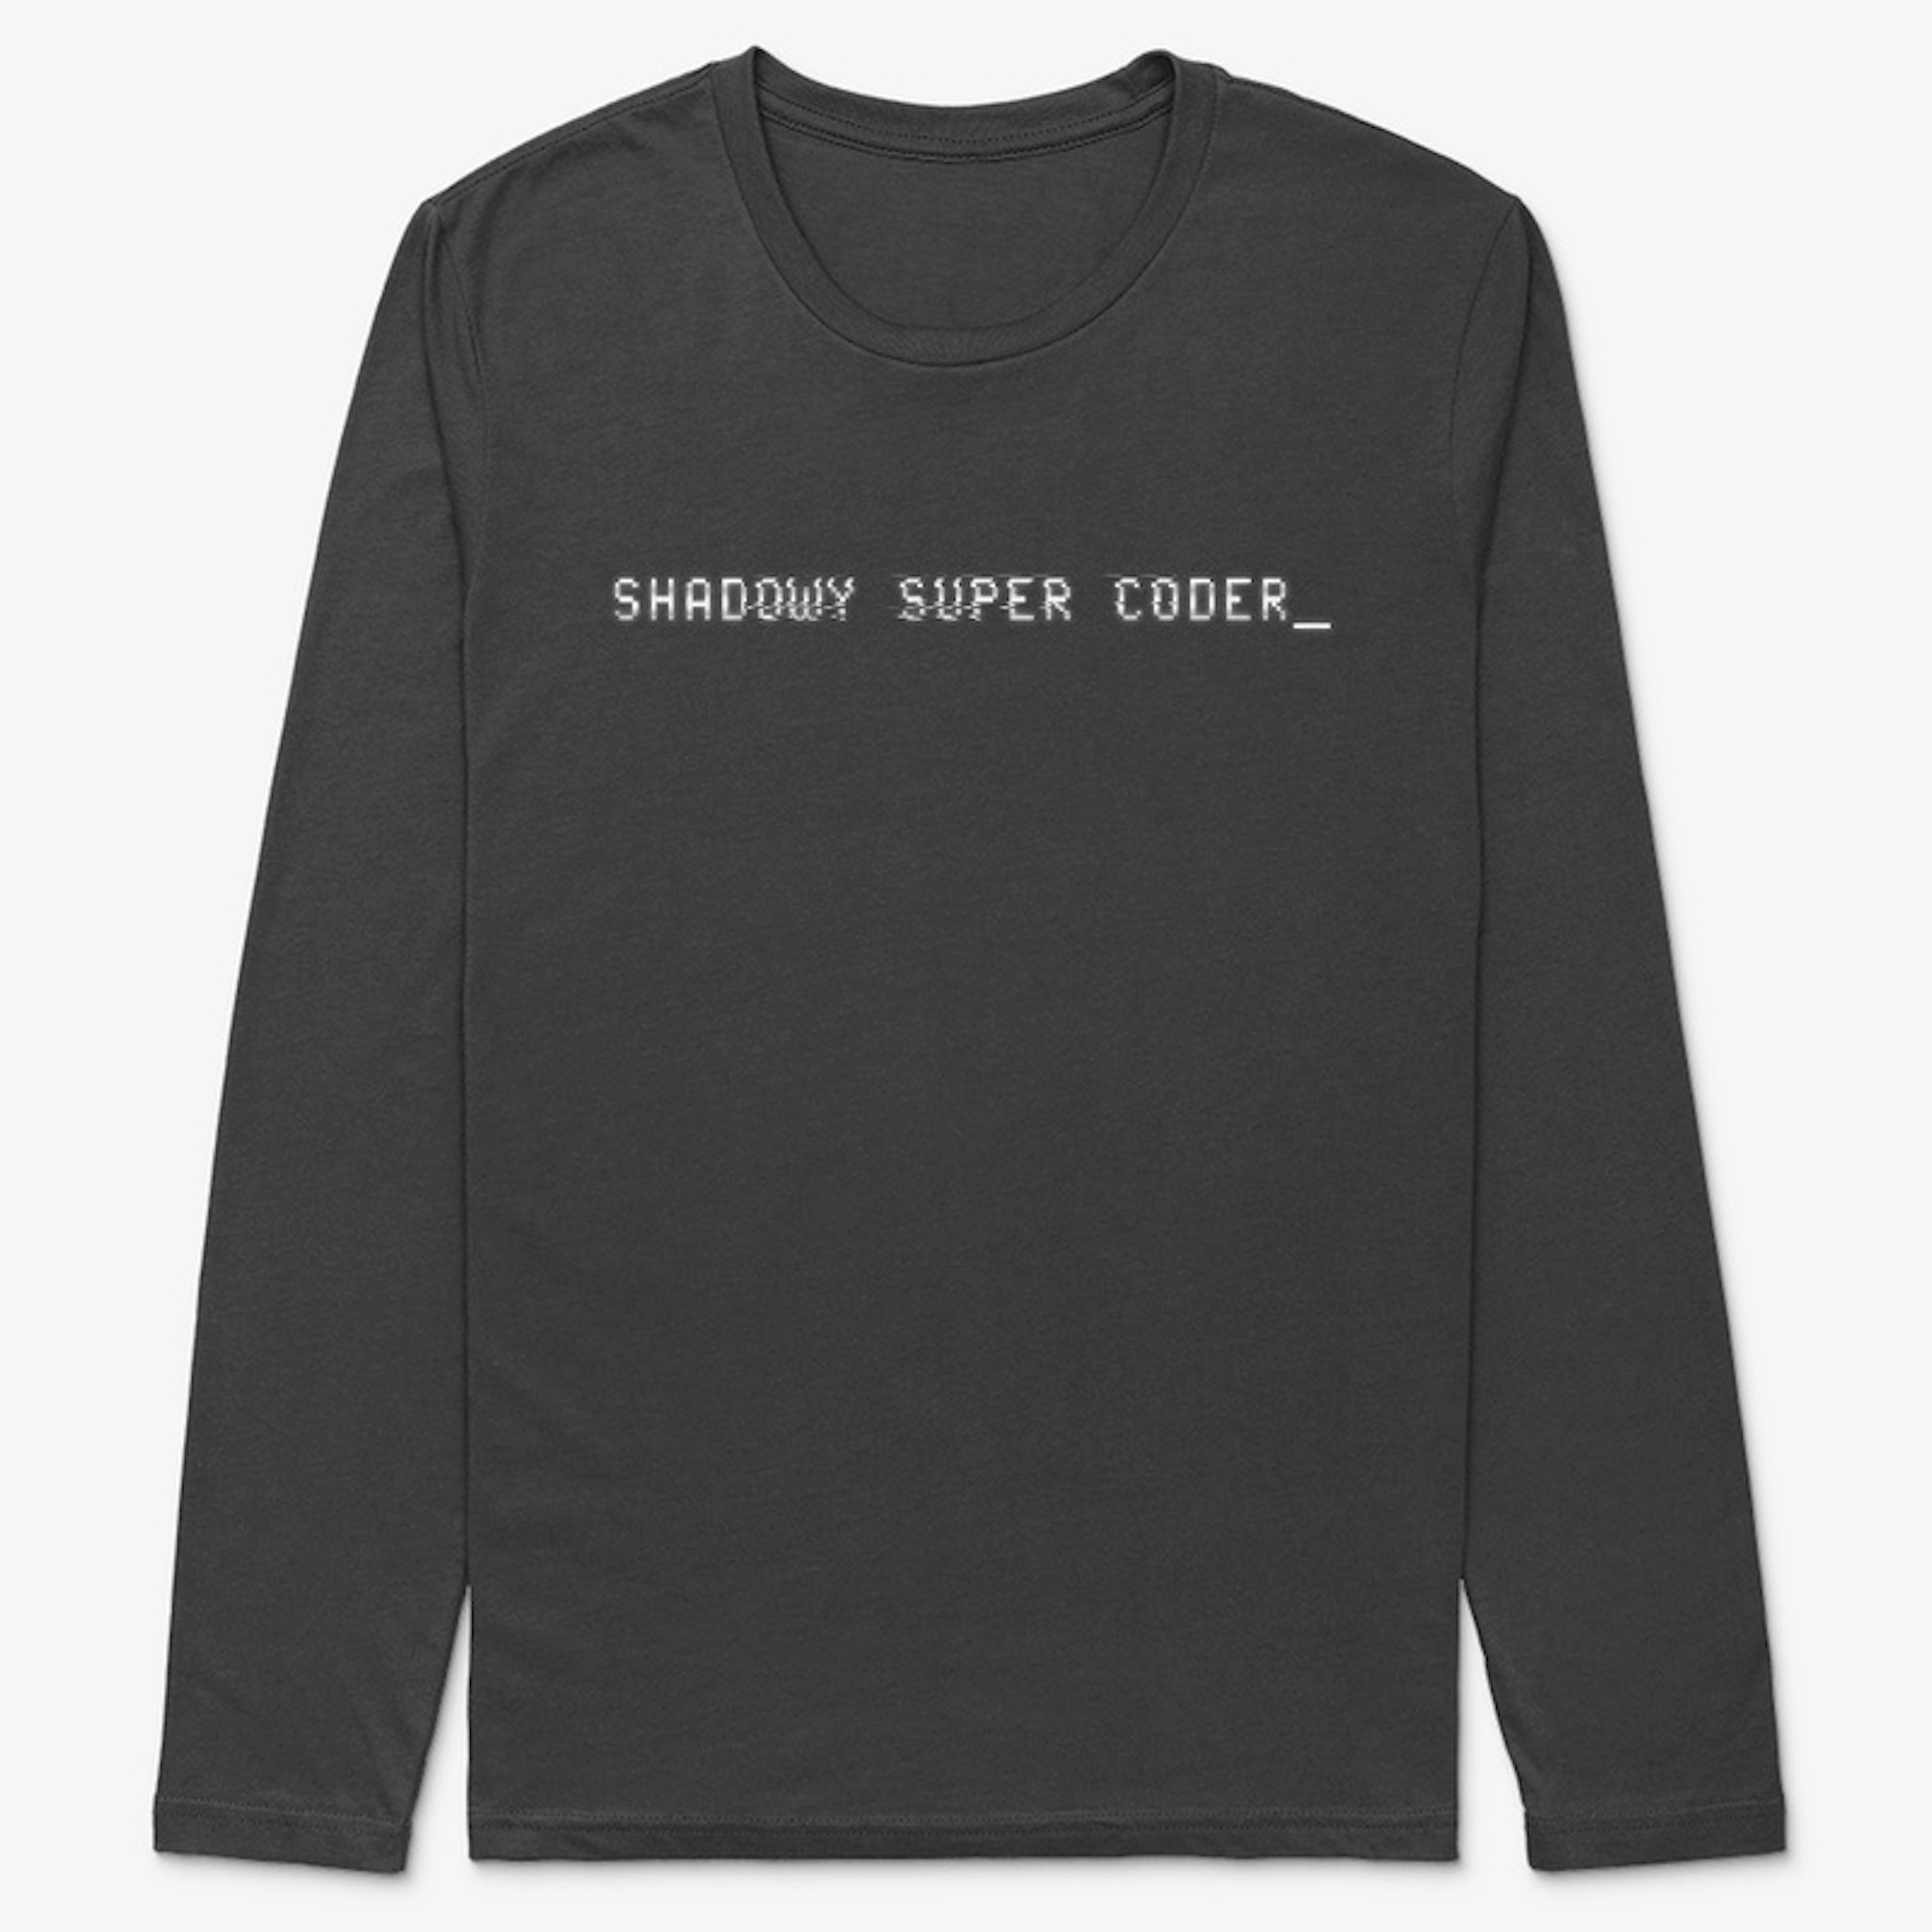 shadowy super coder